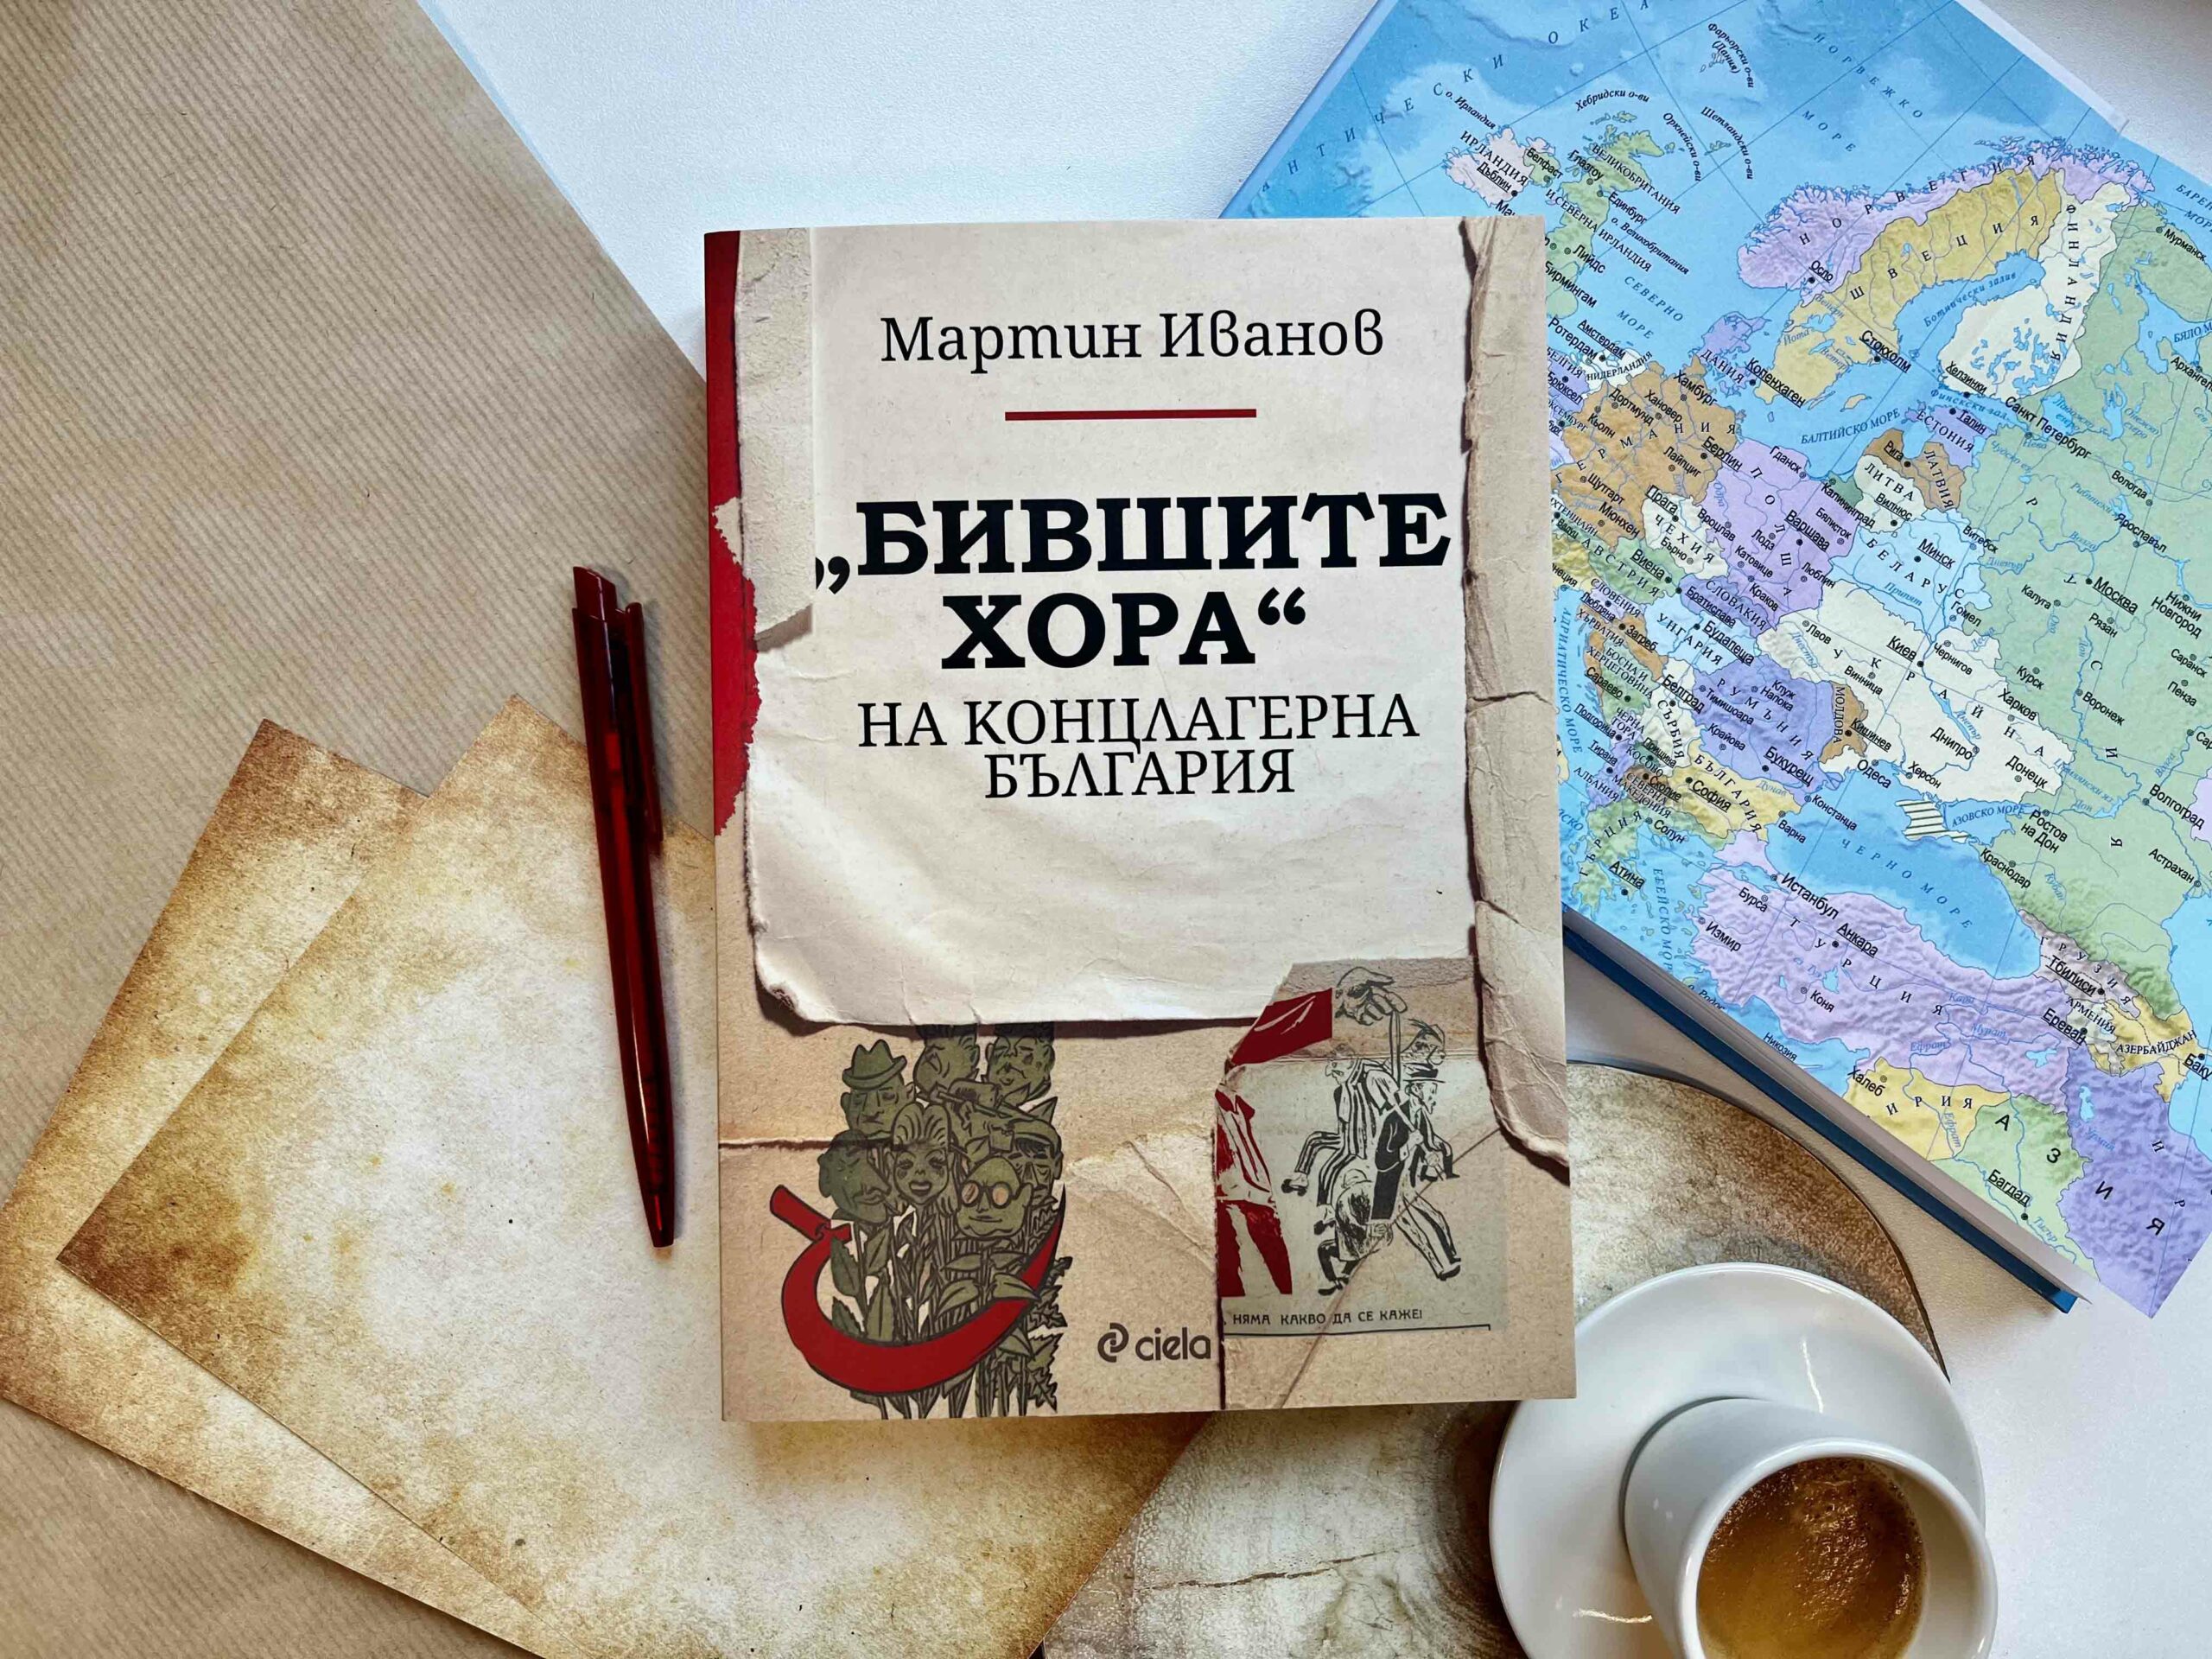 „Бившите хора“ на концлагерна България“ – изследване на Мартин Иванов